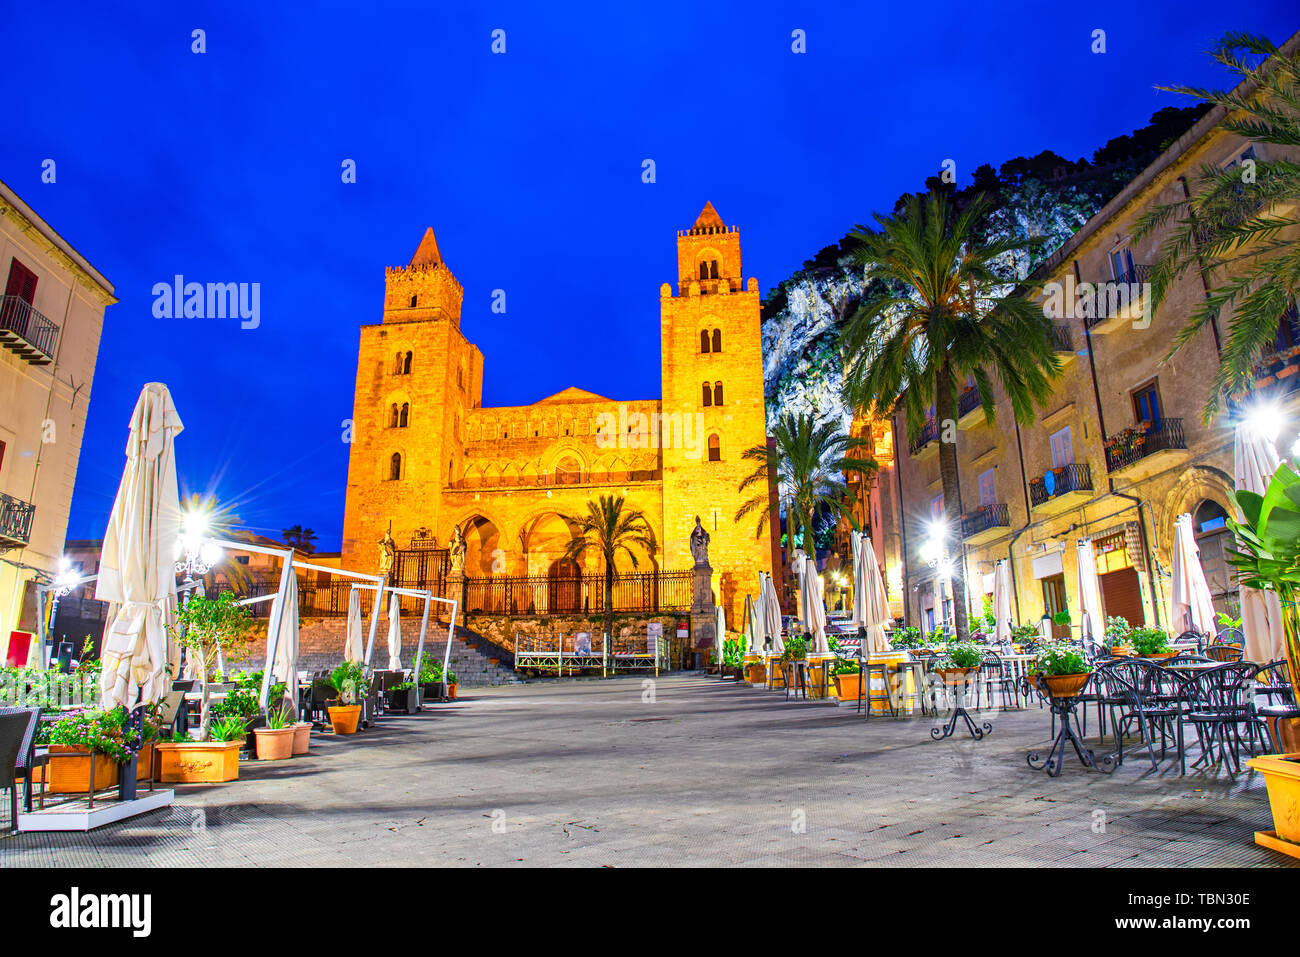 Cefalu, Sicile, Italie : Vue de nuit sur la place de la ville avec la Cathédrale ou Basilique de Cefalu, Duomo di Napoli, une église catholique construite dans la N Banque D'Images